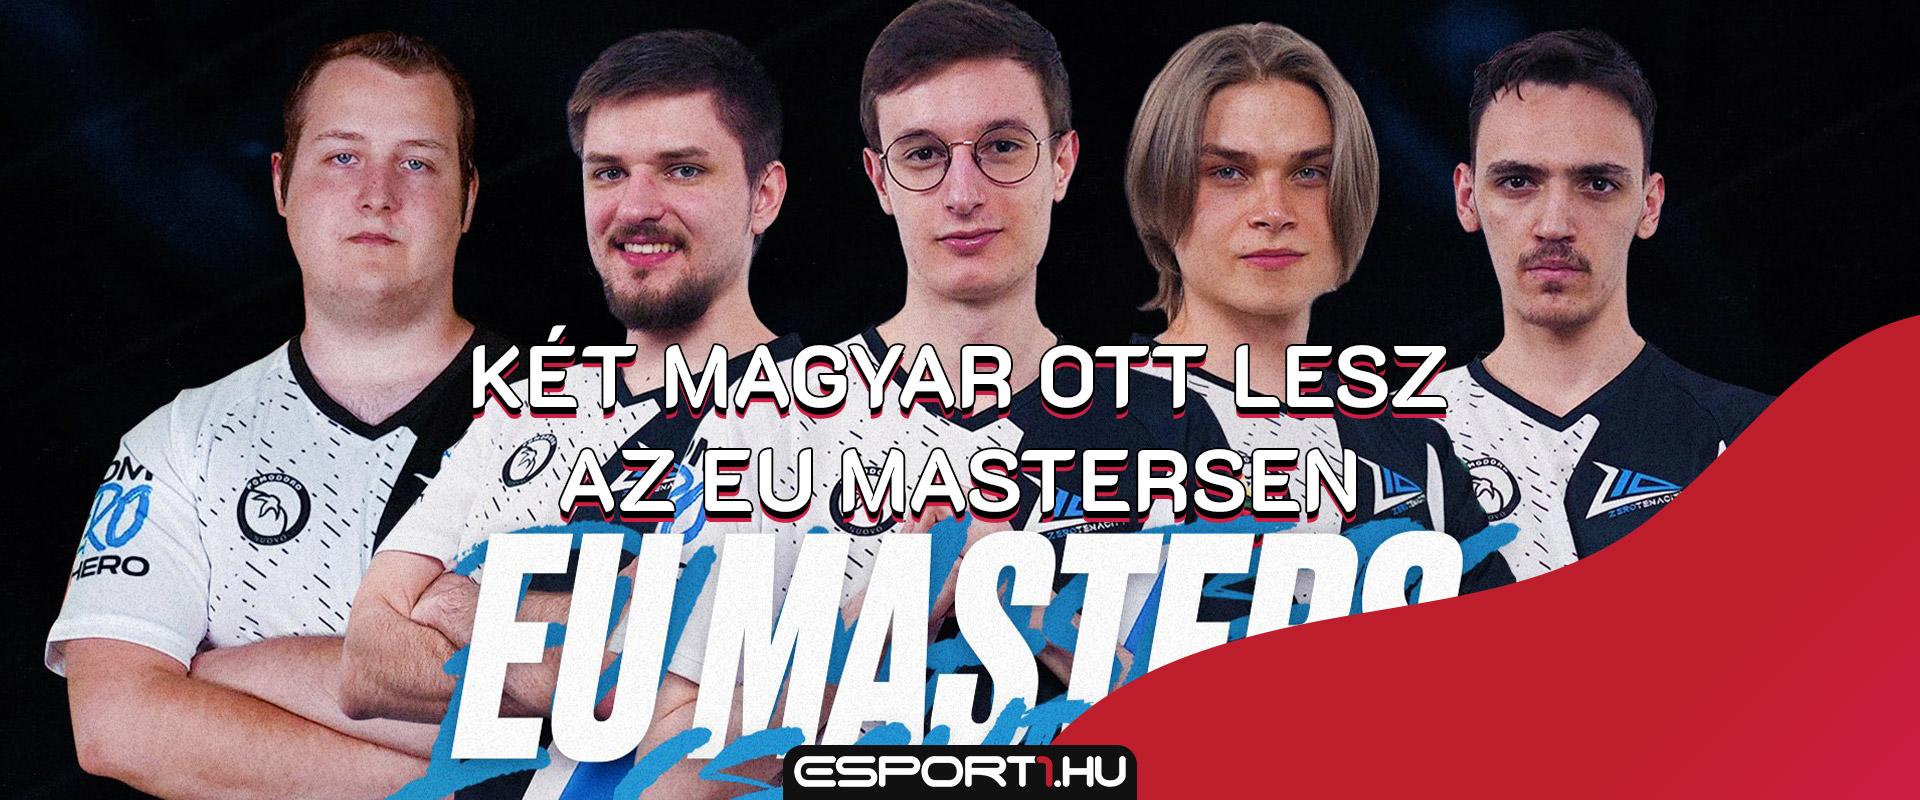 LoL: Két magyar játékosnak szurkolhattok az EU Mastersben